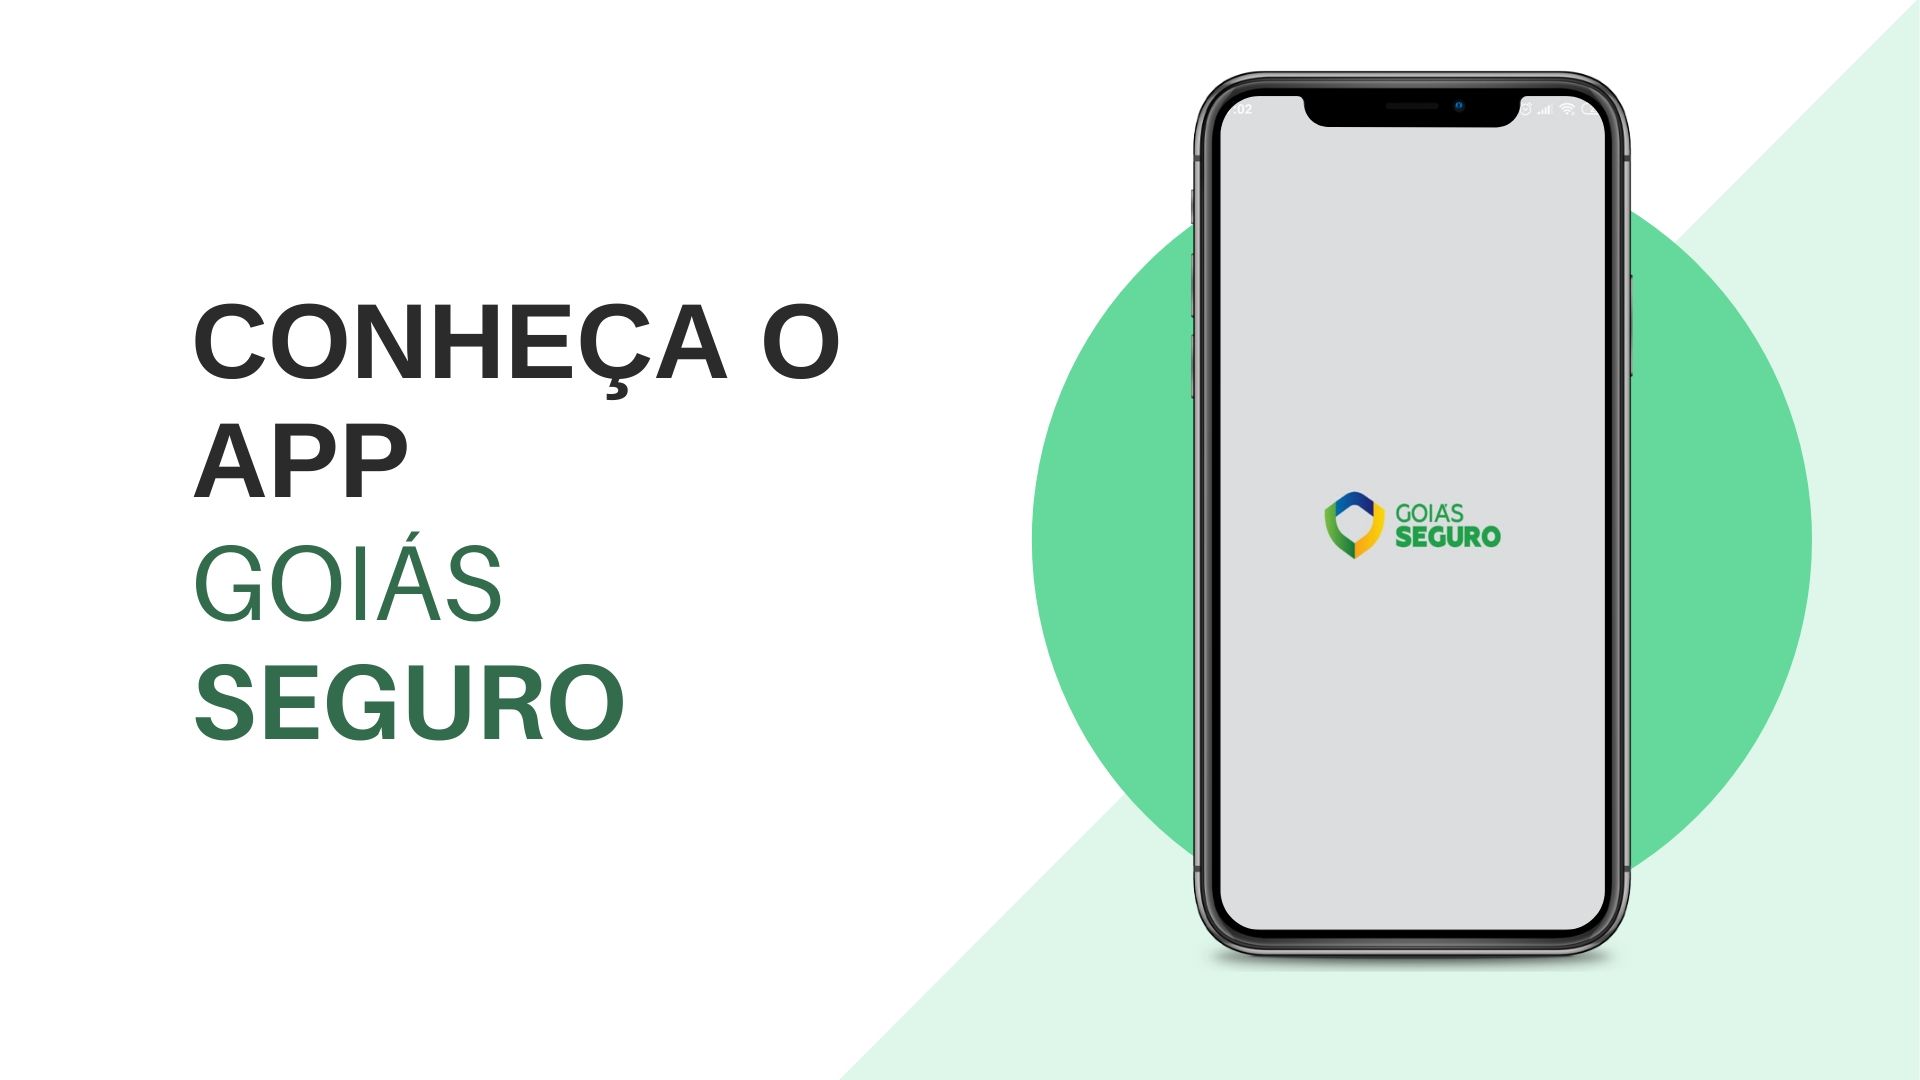 Conheça o app Goiás Seguro